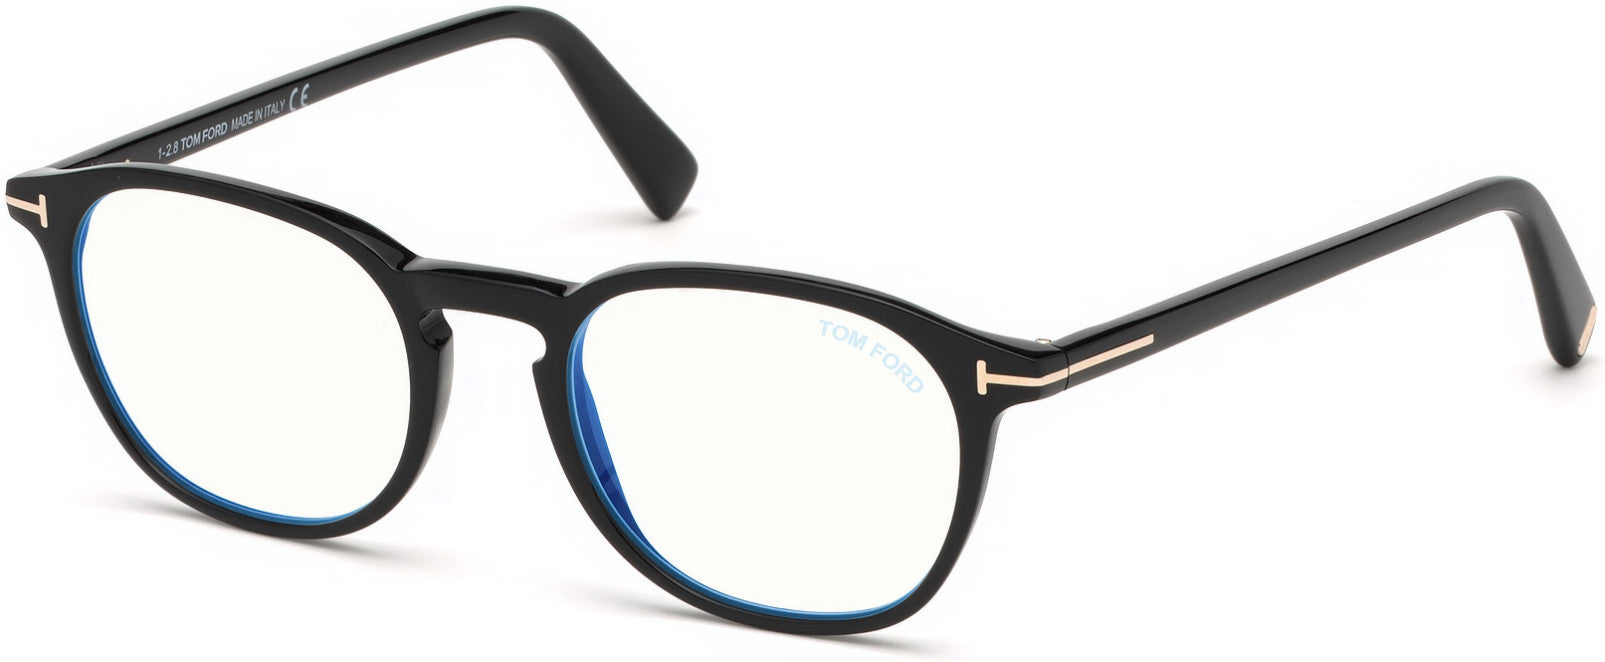 Tom Ford FT5583-B Geometric Eyeglasses 001-001 - Shiny Black, Shiny Rose Gold "t" Logo/ Blue Block Lenses